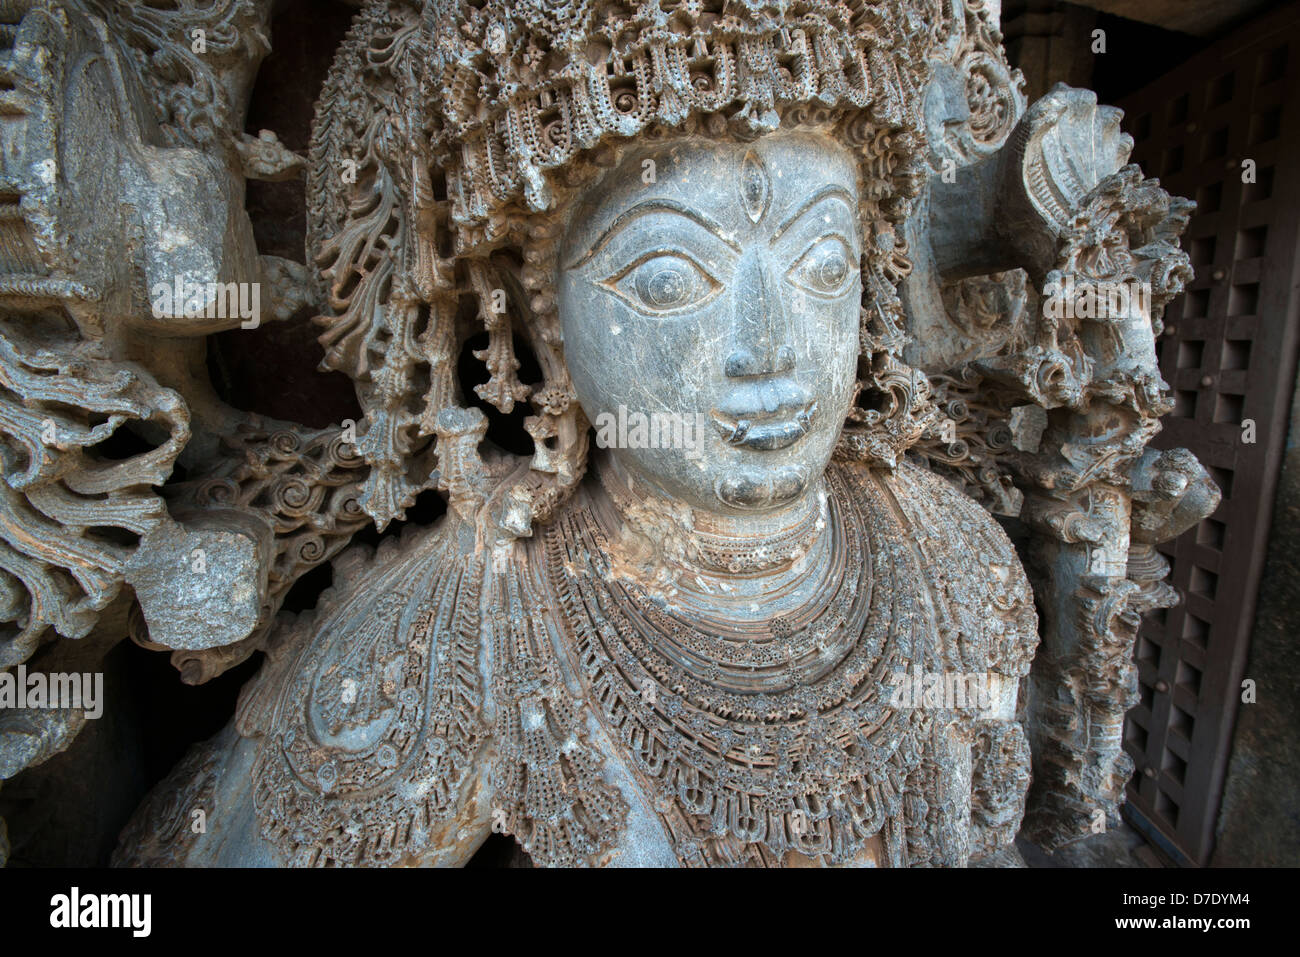 Ein Detail aus einer Statue zeigt die Beherrschung der Hoysala Handwerkskunst auf der Hindu-Tempel in Dorasamudra, in der Nähe von Hassan, Karnataka, Indien Stockfoto